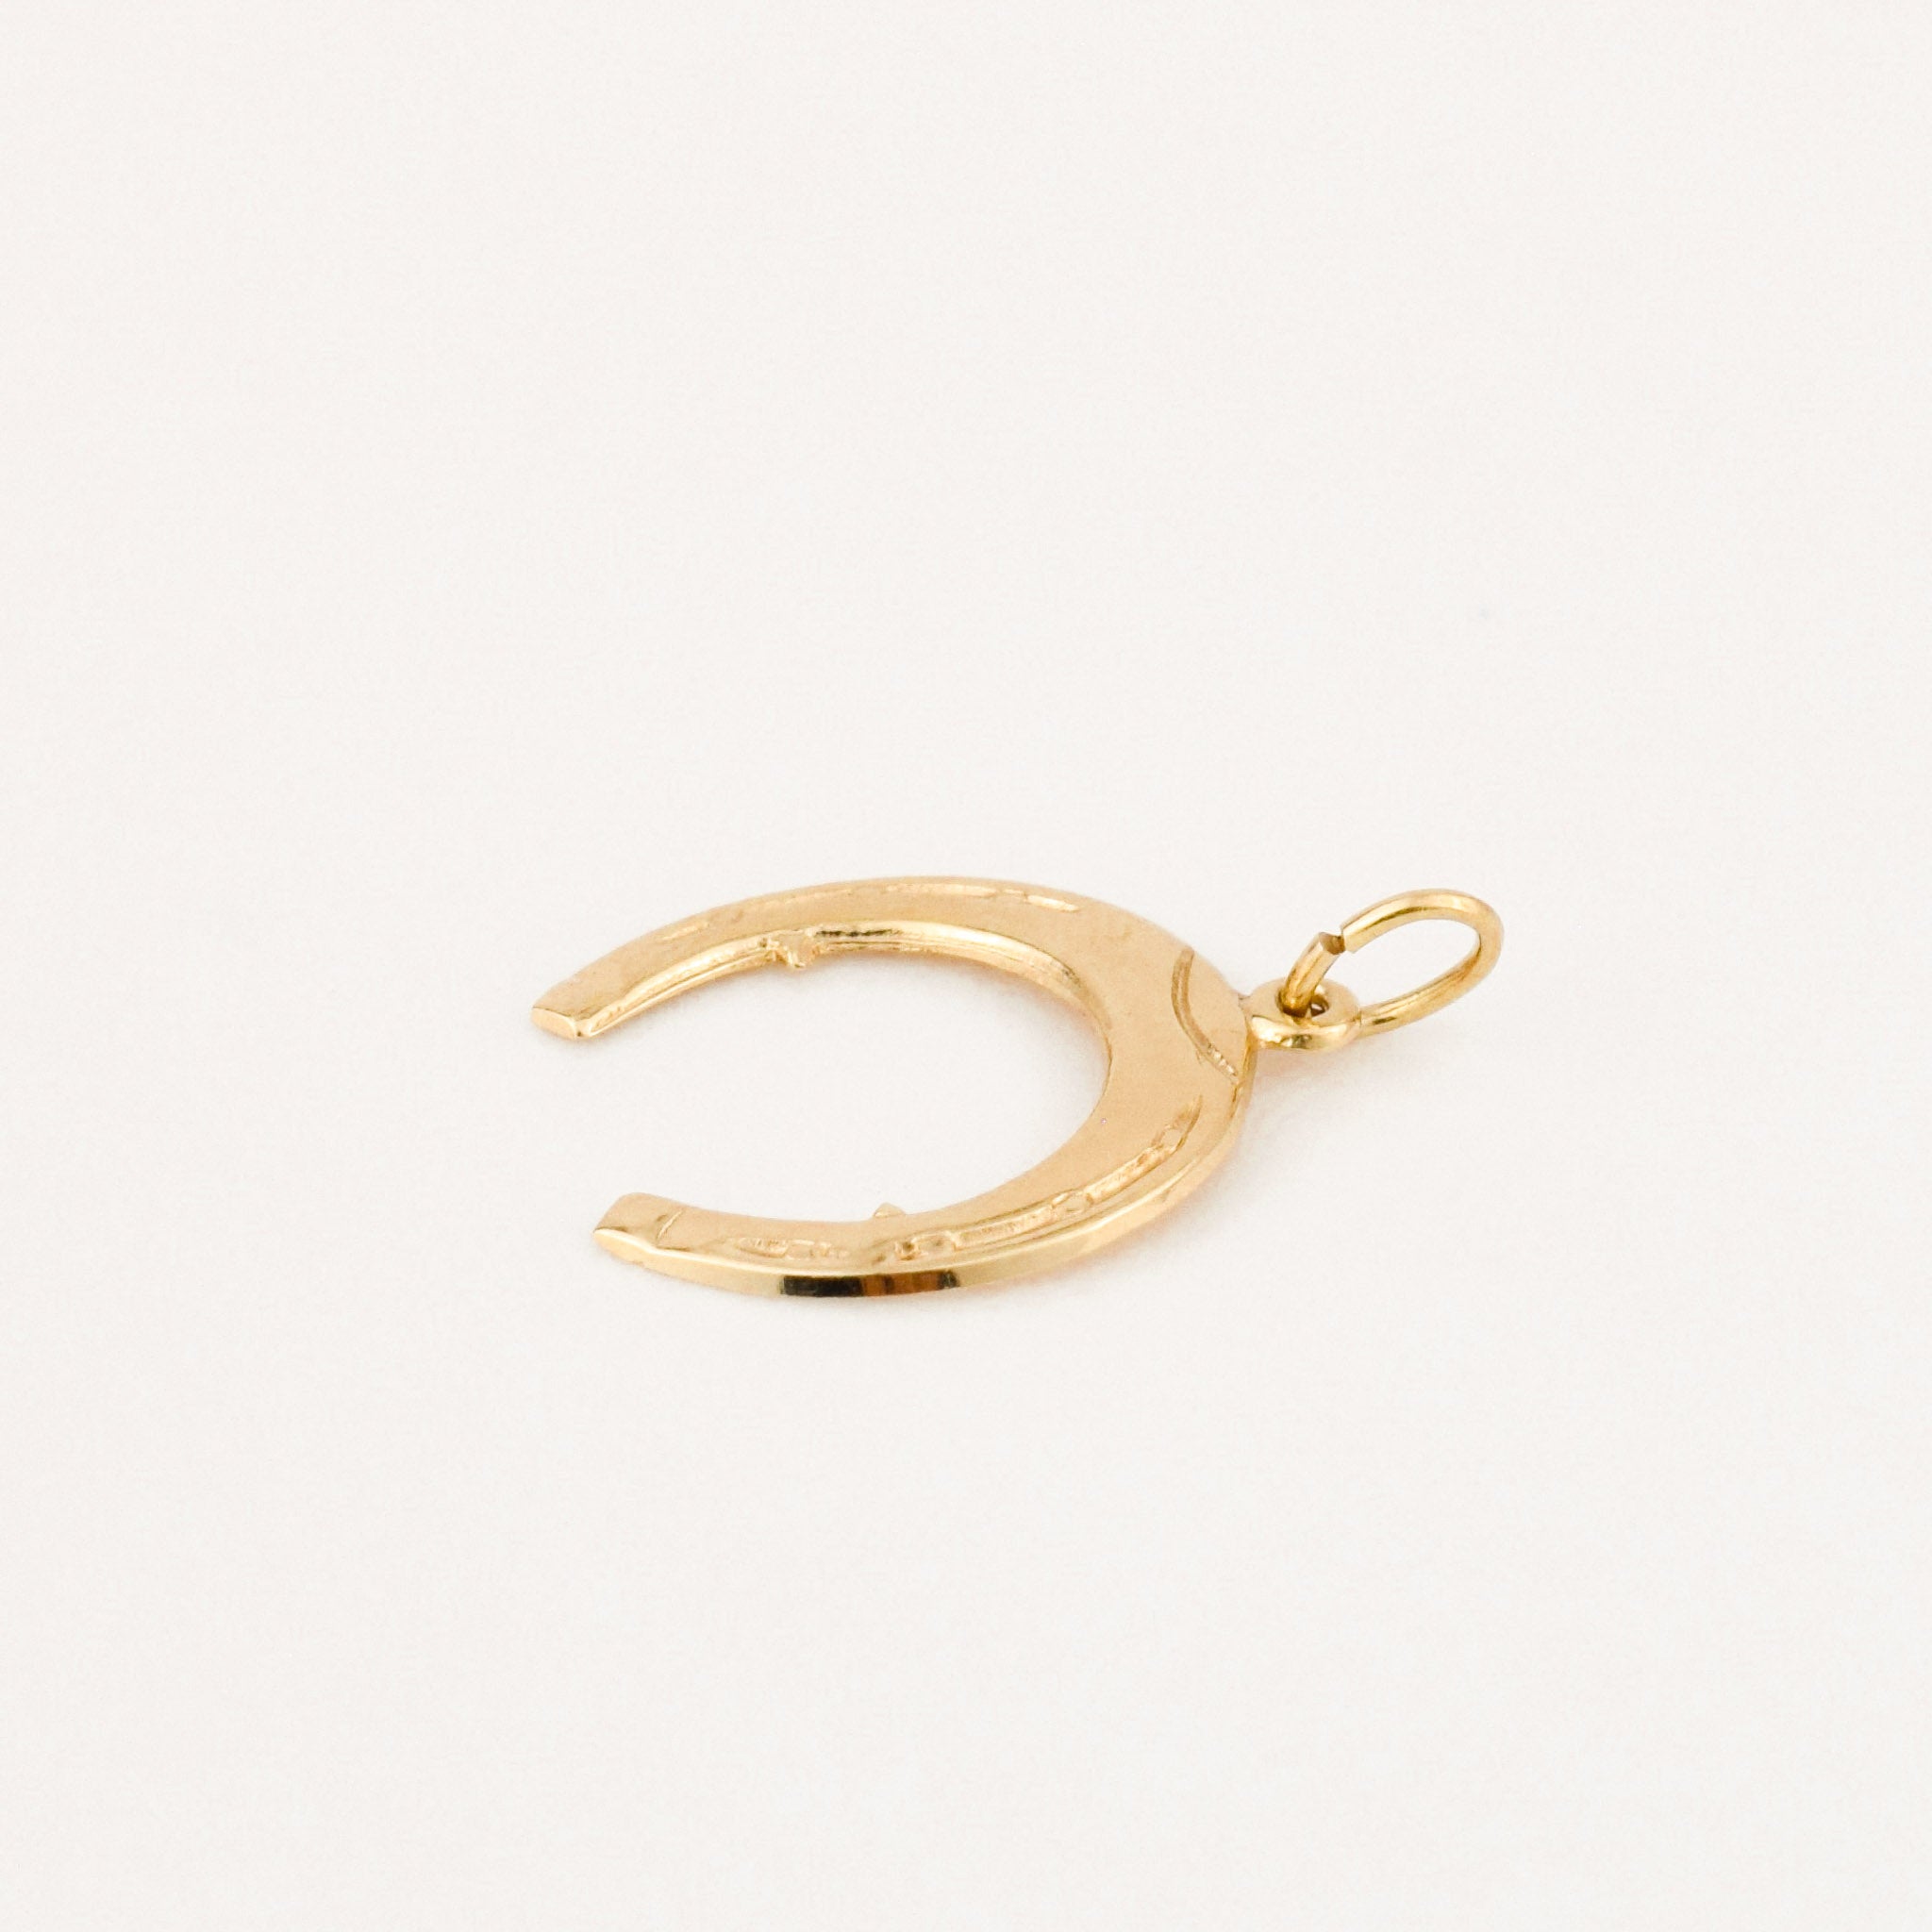 vintage gold horseshoe charm